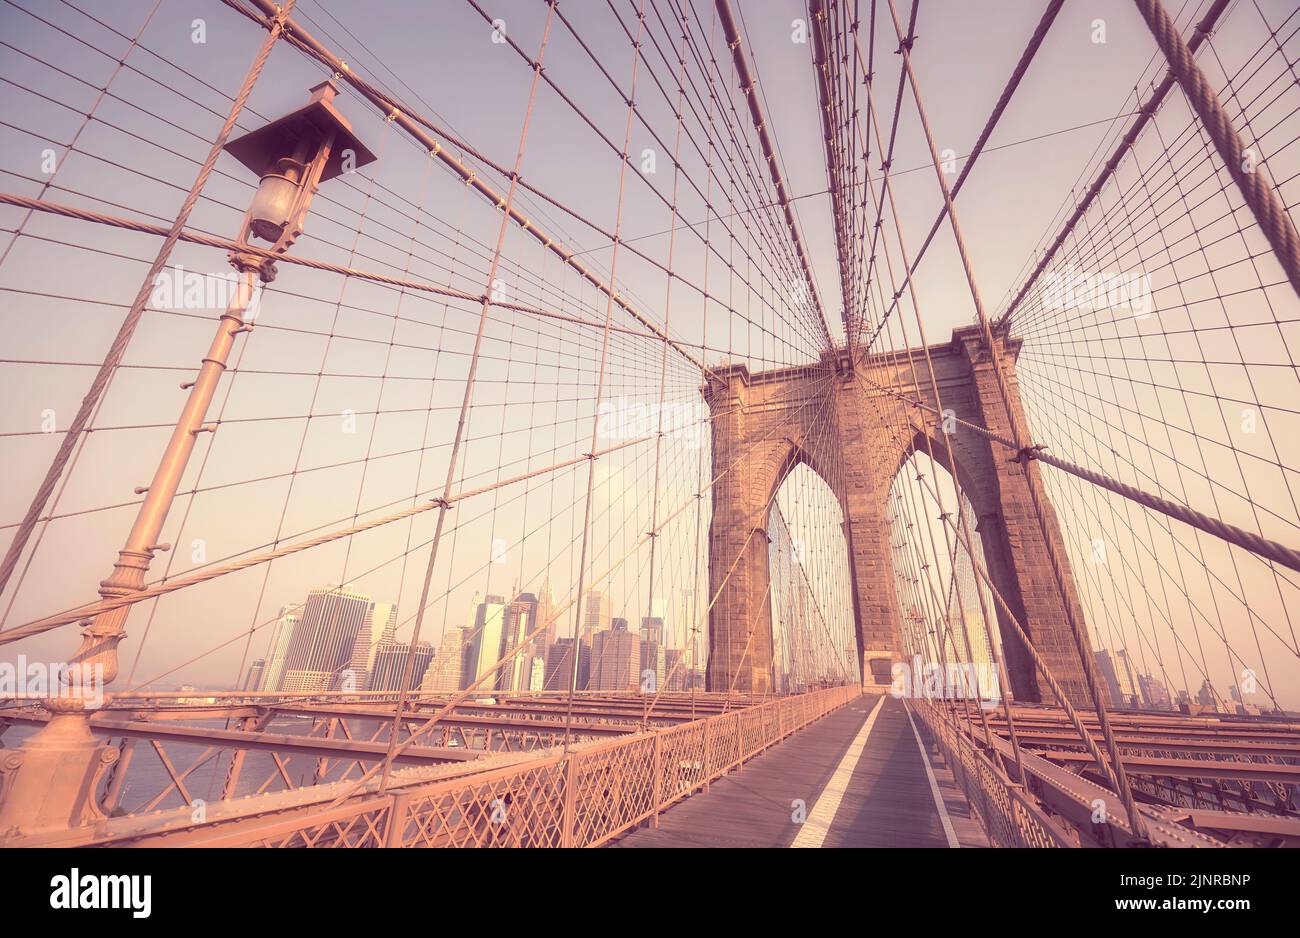 Immagine retro stilizzata del Ponte di Brooklyn, New York, USA. Foto Stock